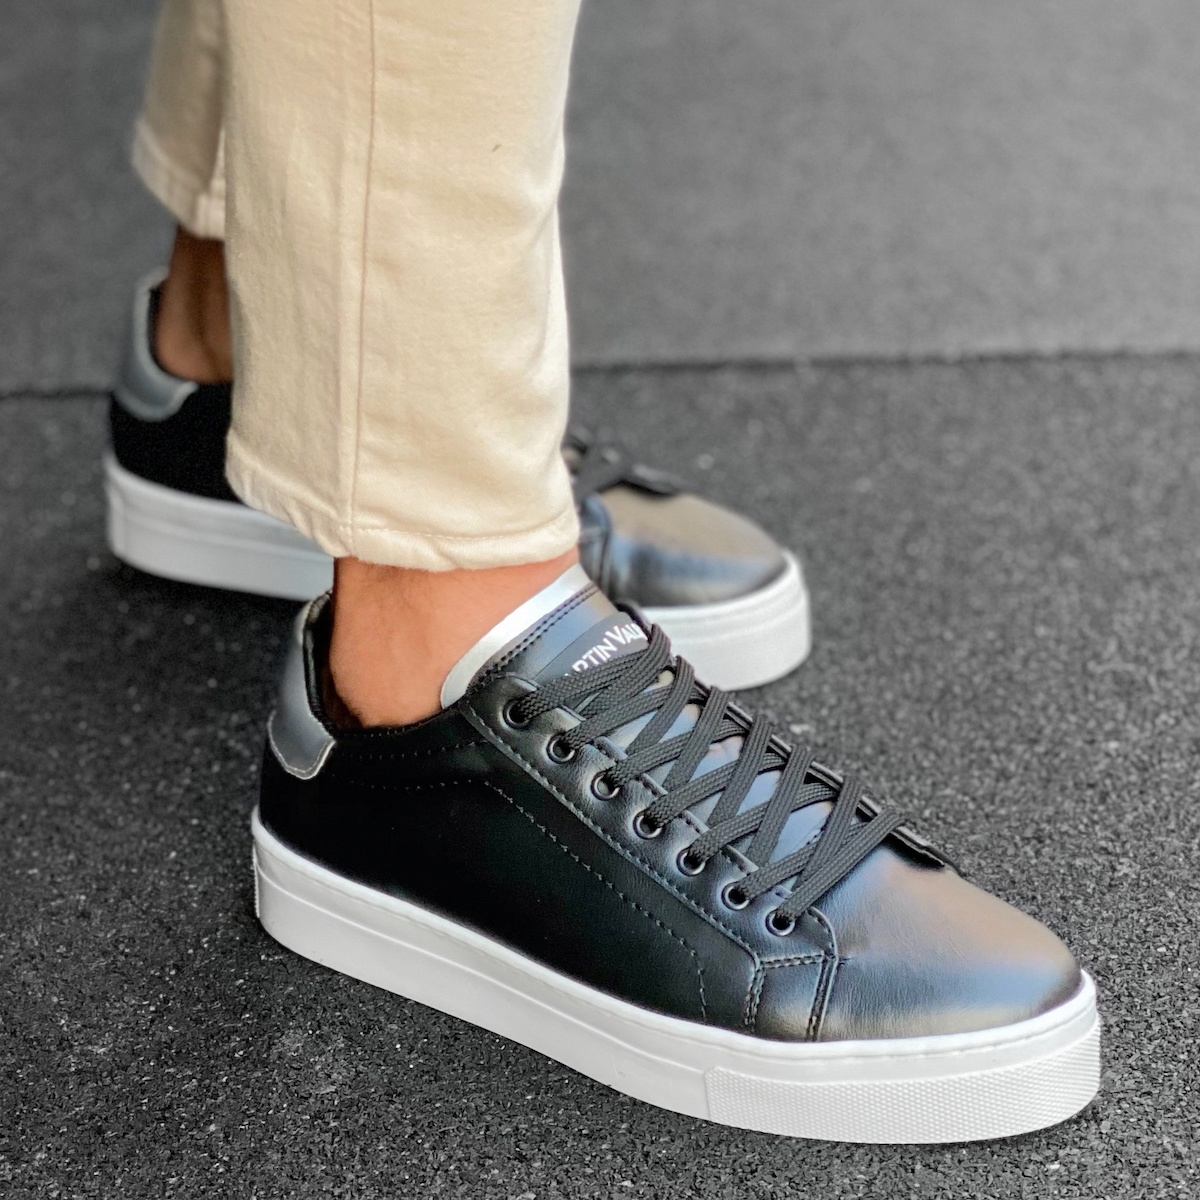 Men's Flat Sole Low Sneakers In Black-Silver